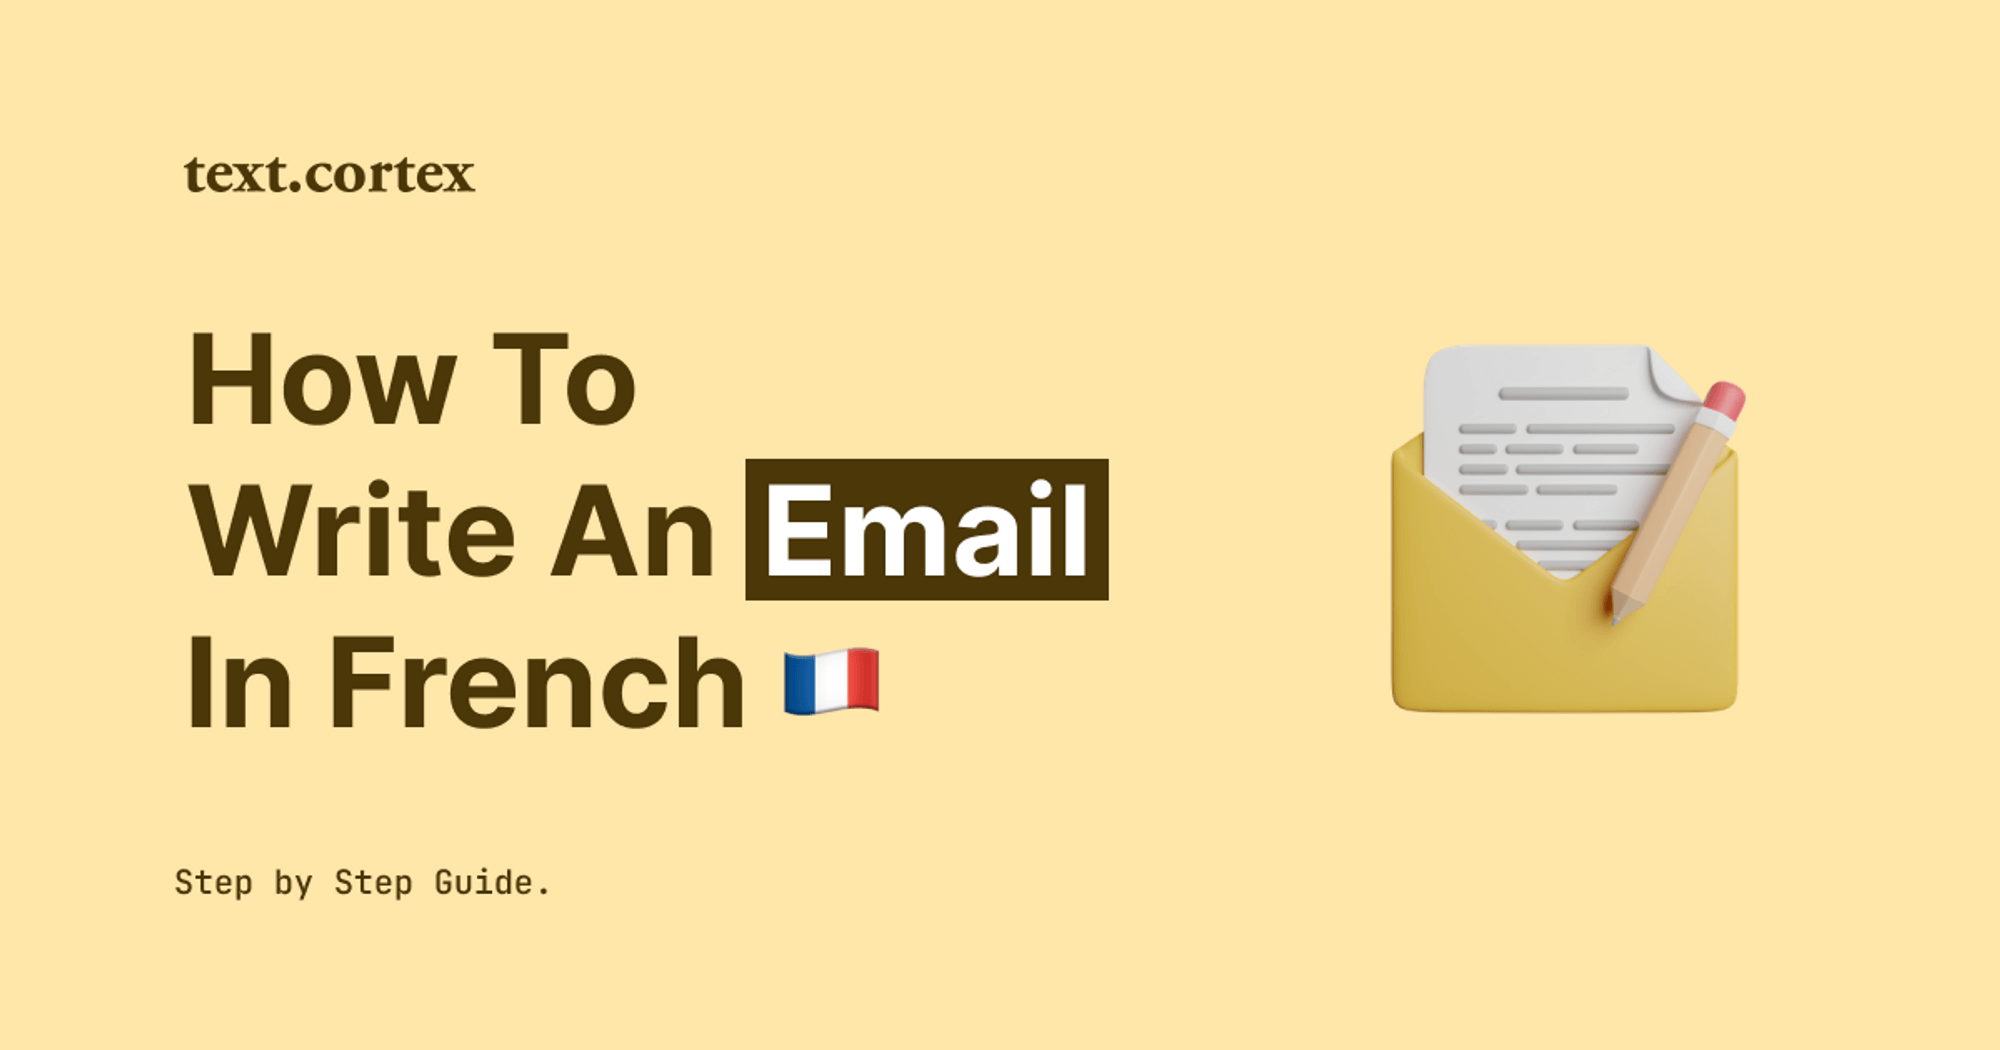 Een e-mail schrijven in het Frans - stap-voor-stap handleiding